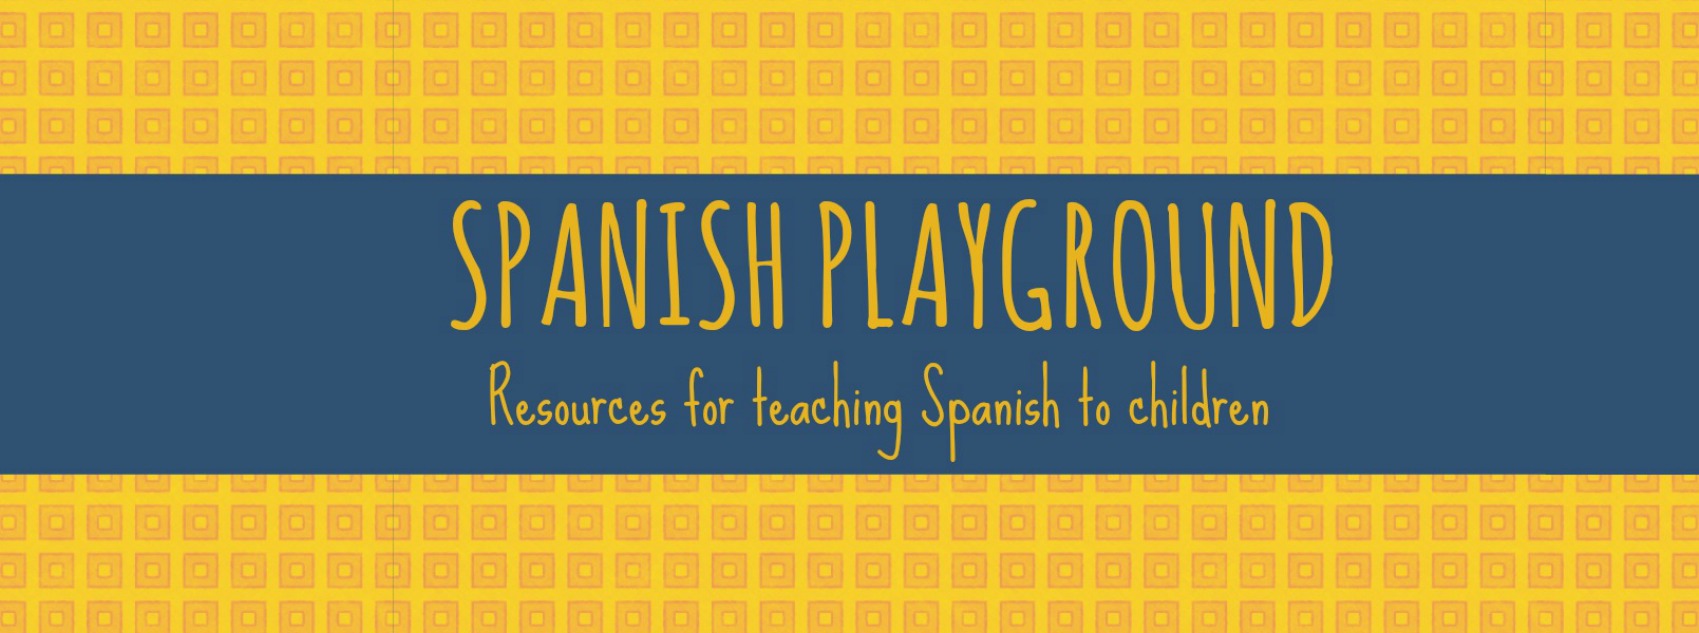 “5 Apps for Reading in Spanish” – spanishplayground.net